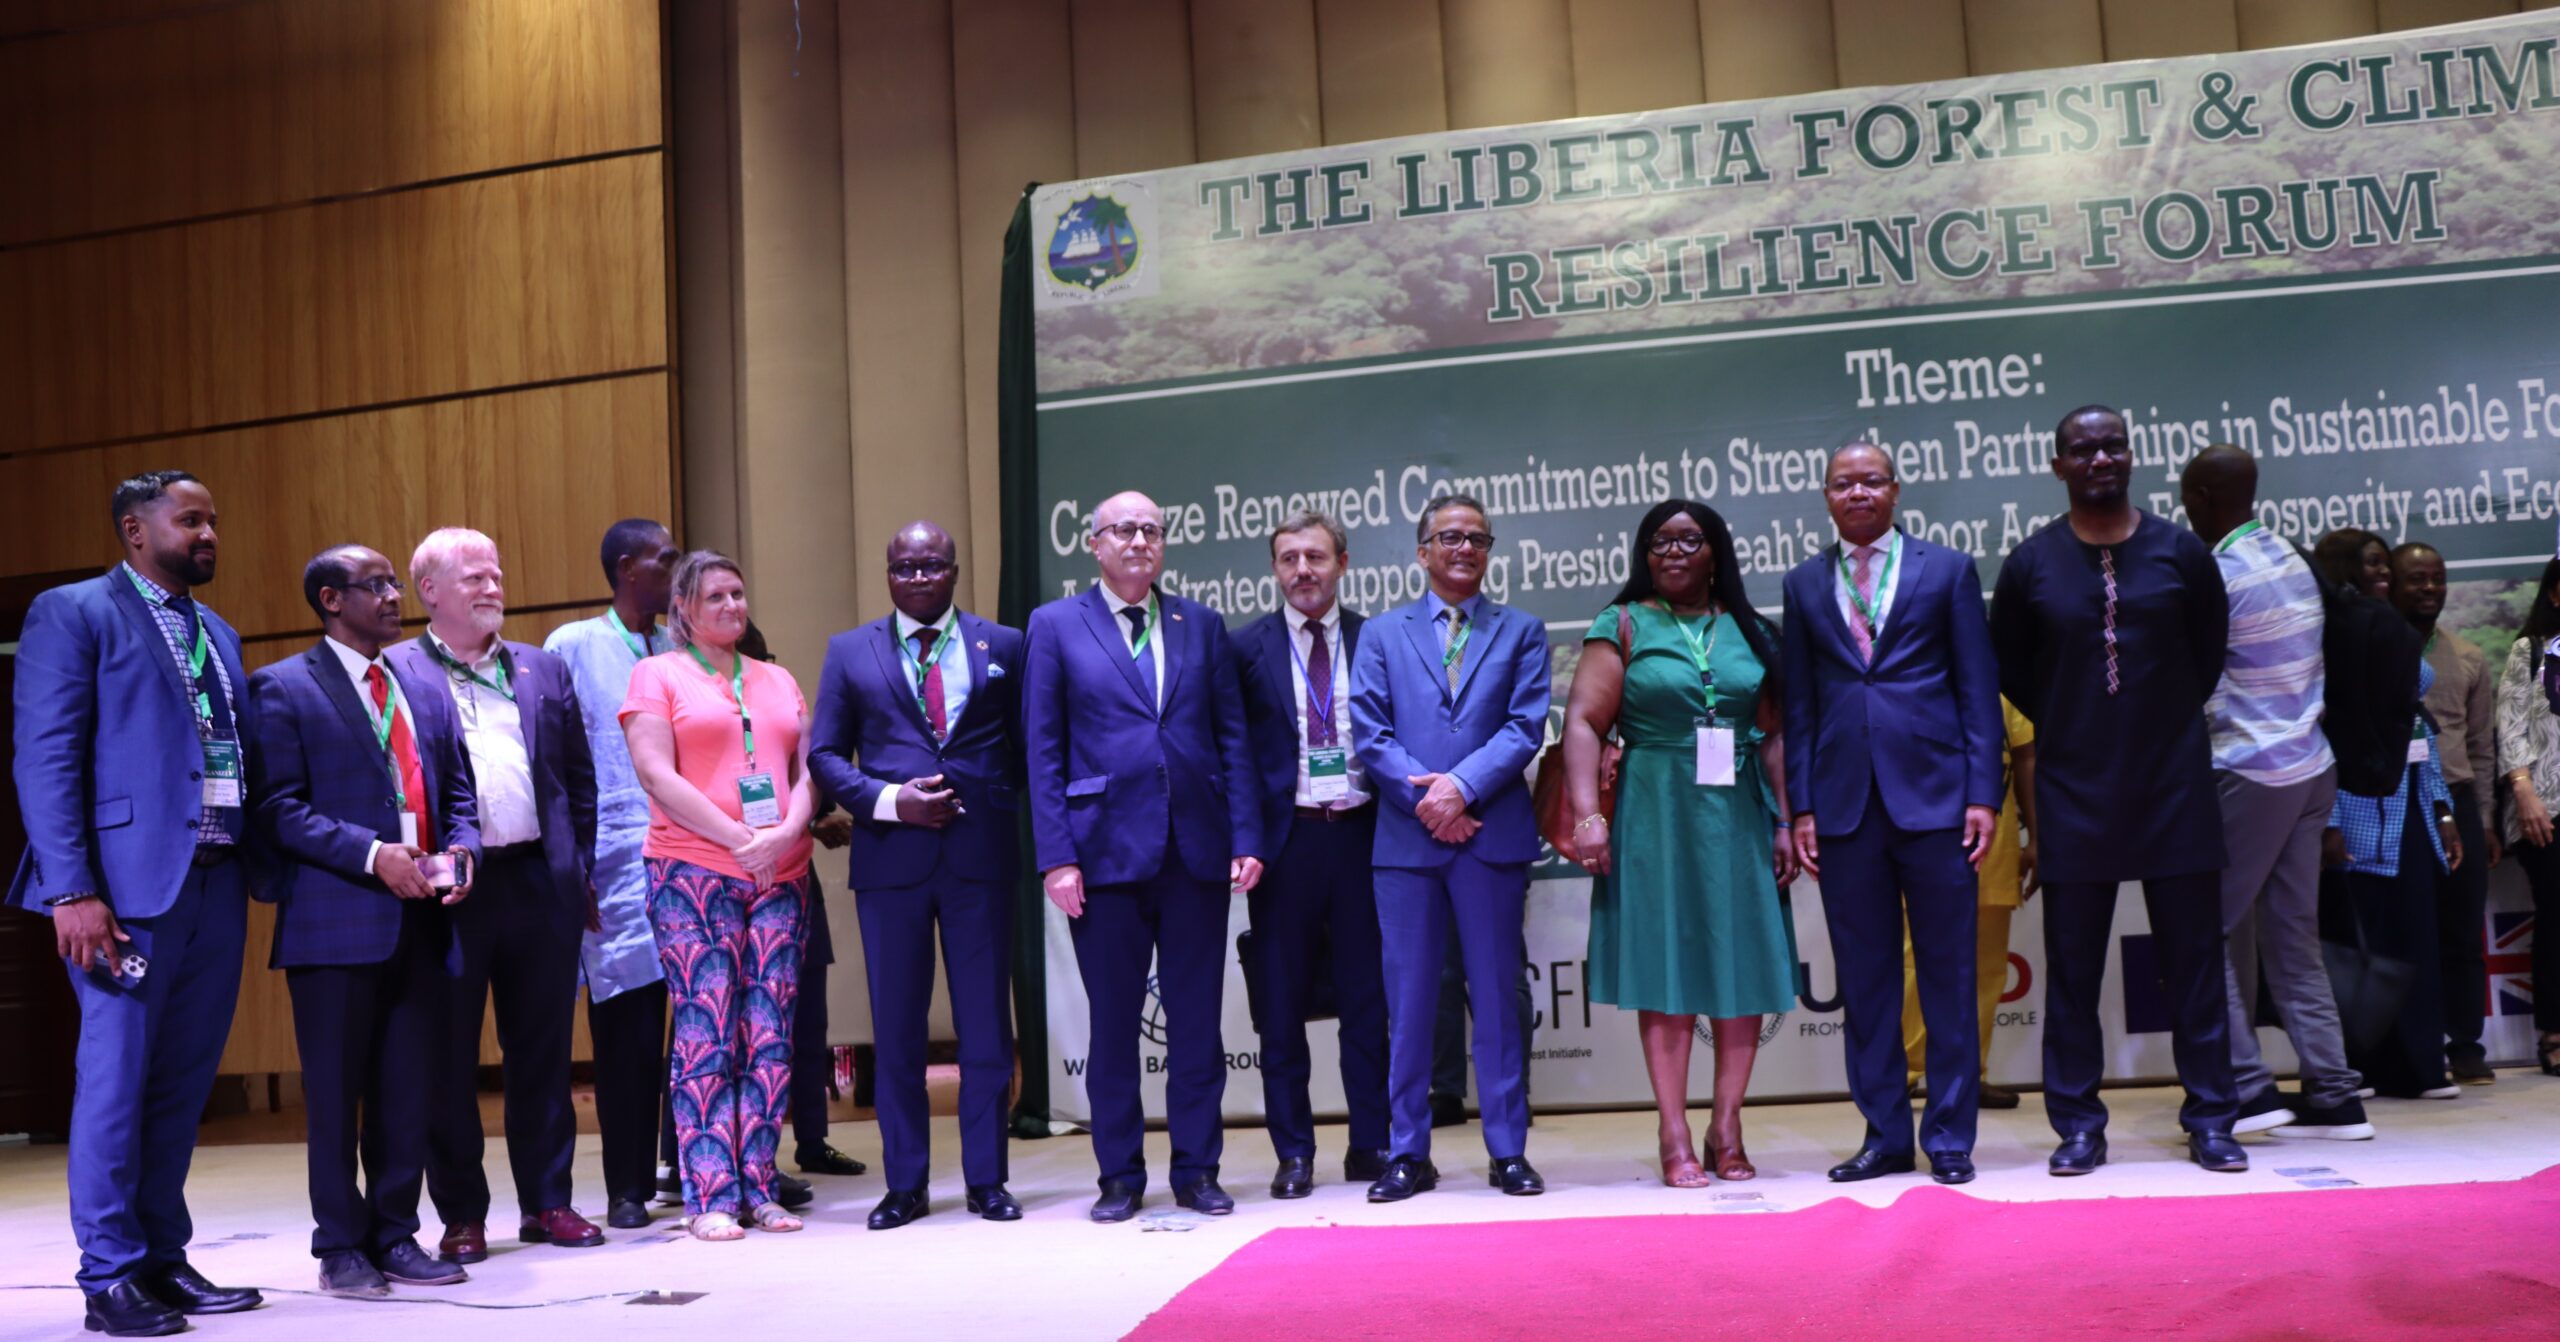 Forest Forum Liberia